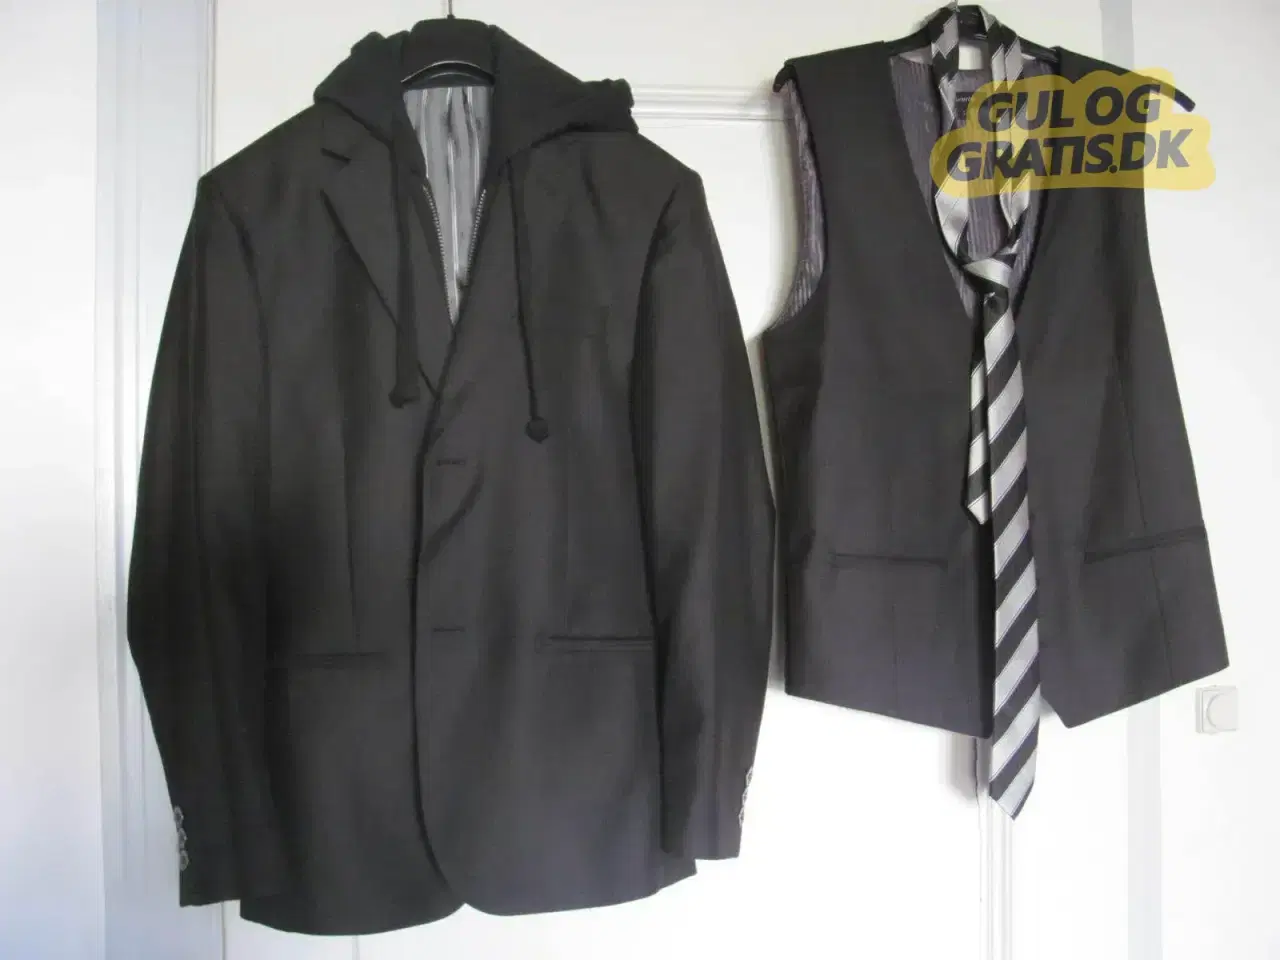 Billede 2 - Konfirmationsjakke, vest og slips